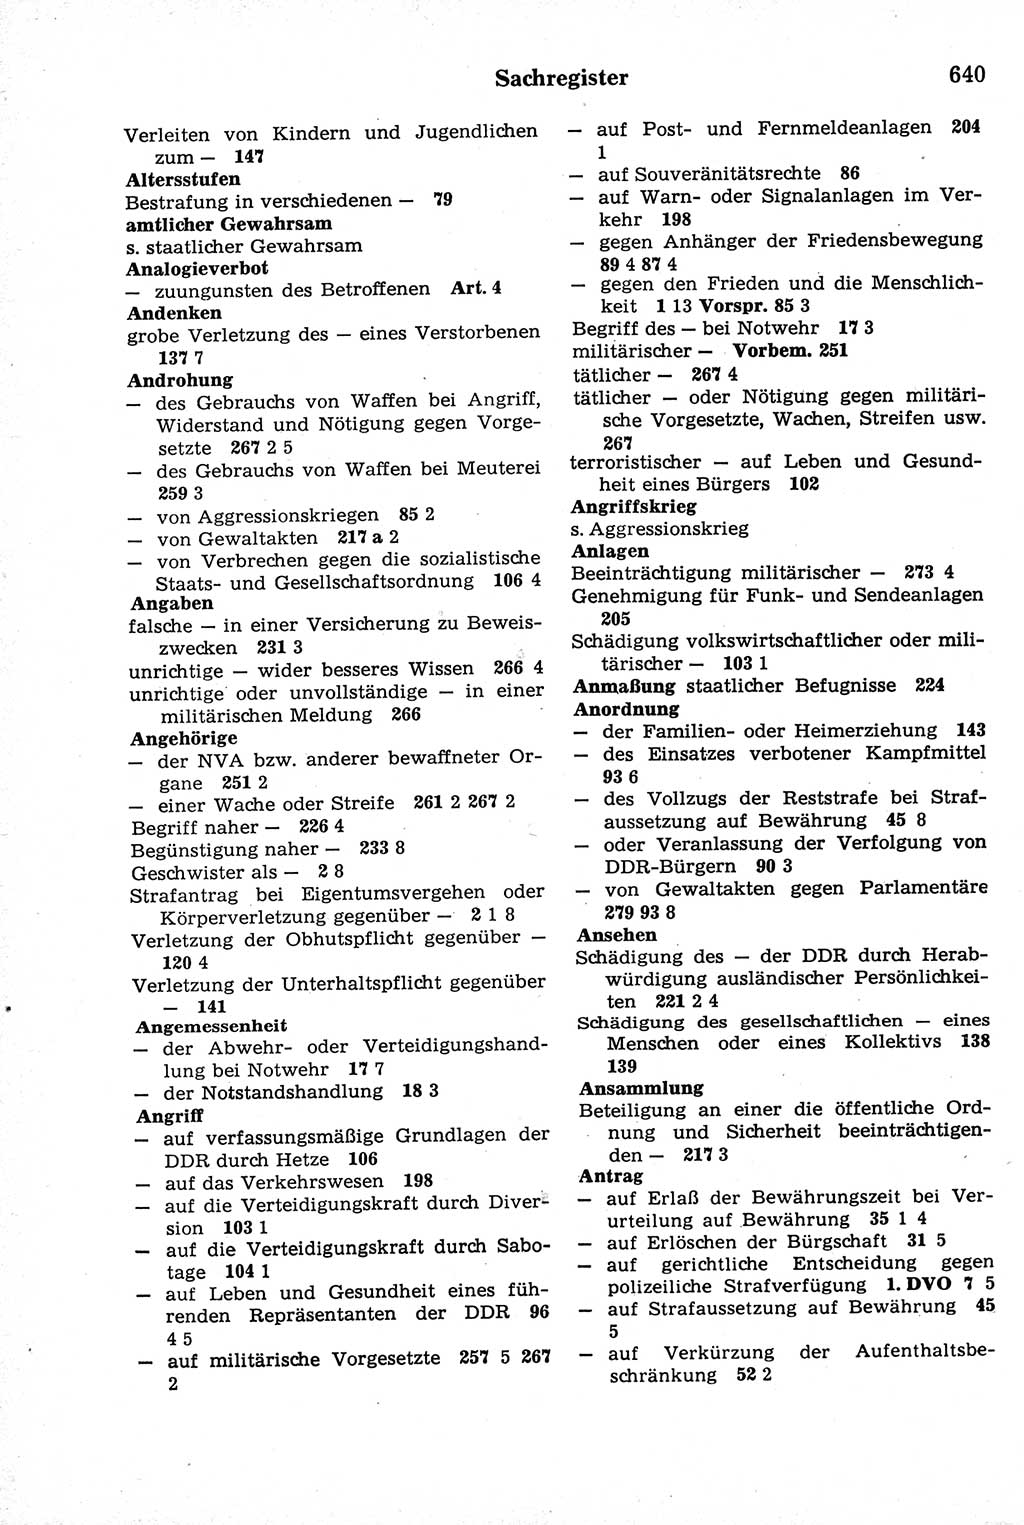 Strafrecht der Deutschen Demokratischen Republik (DDR), Kommentar zum Strafgesetzbuch (StGB) 1981, Seite 640 (Strafr. DDR Komm. StGB 1981, S. 640)